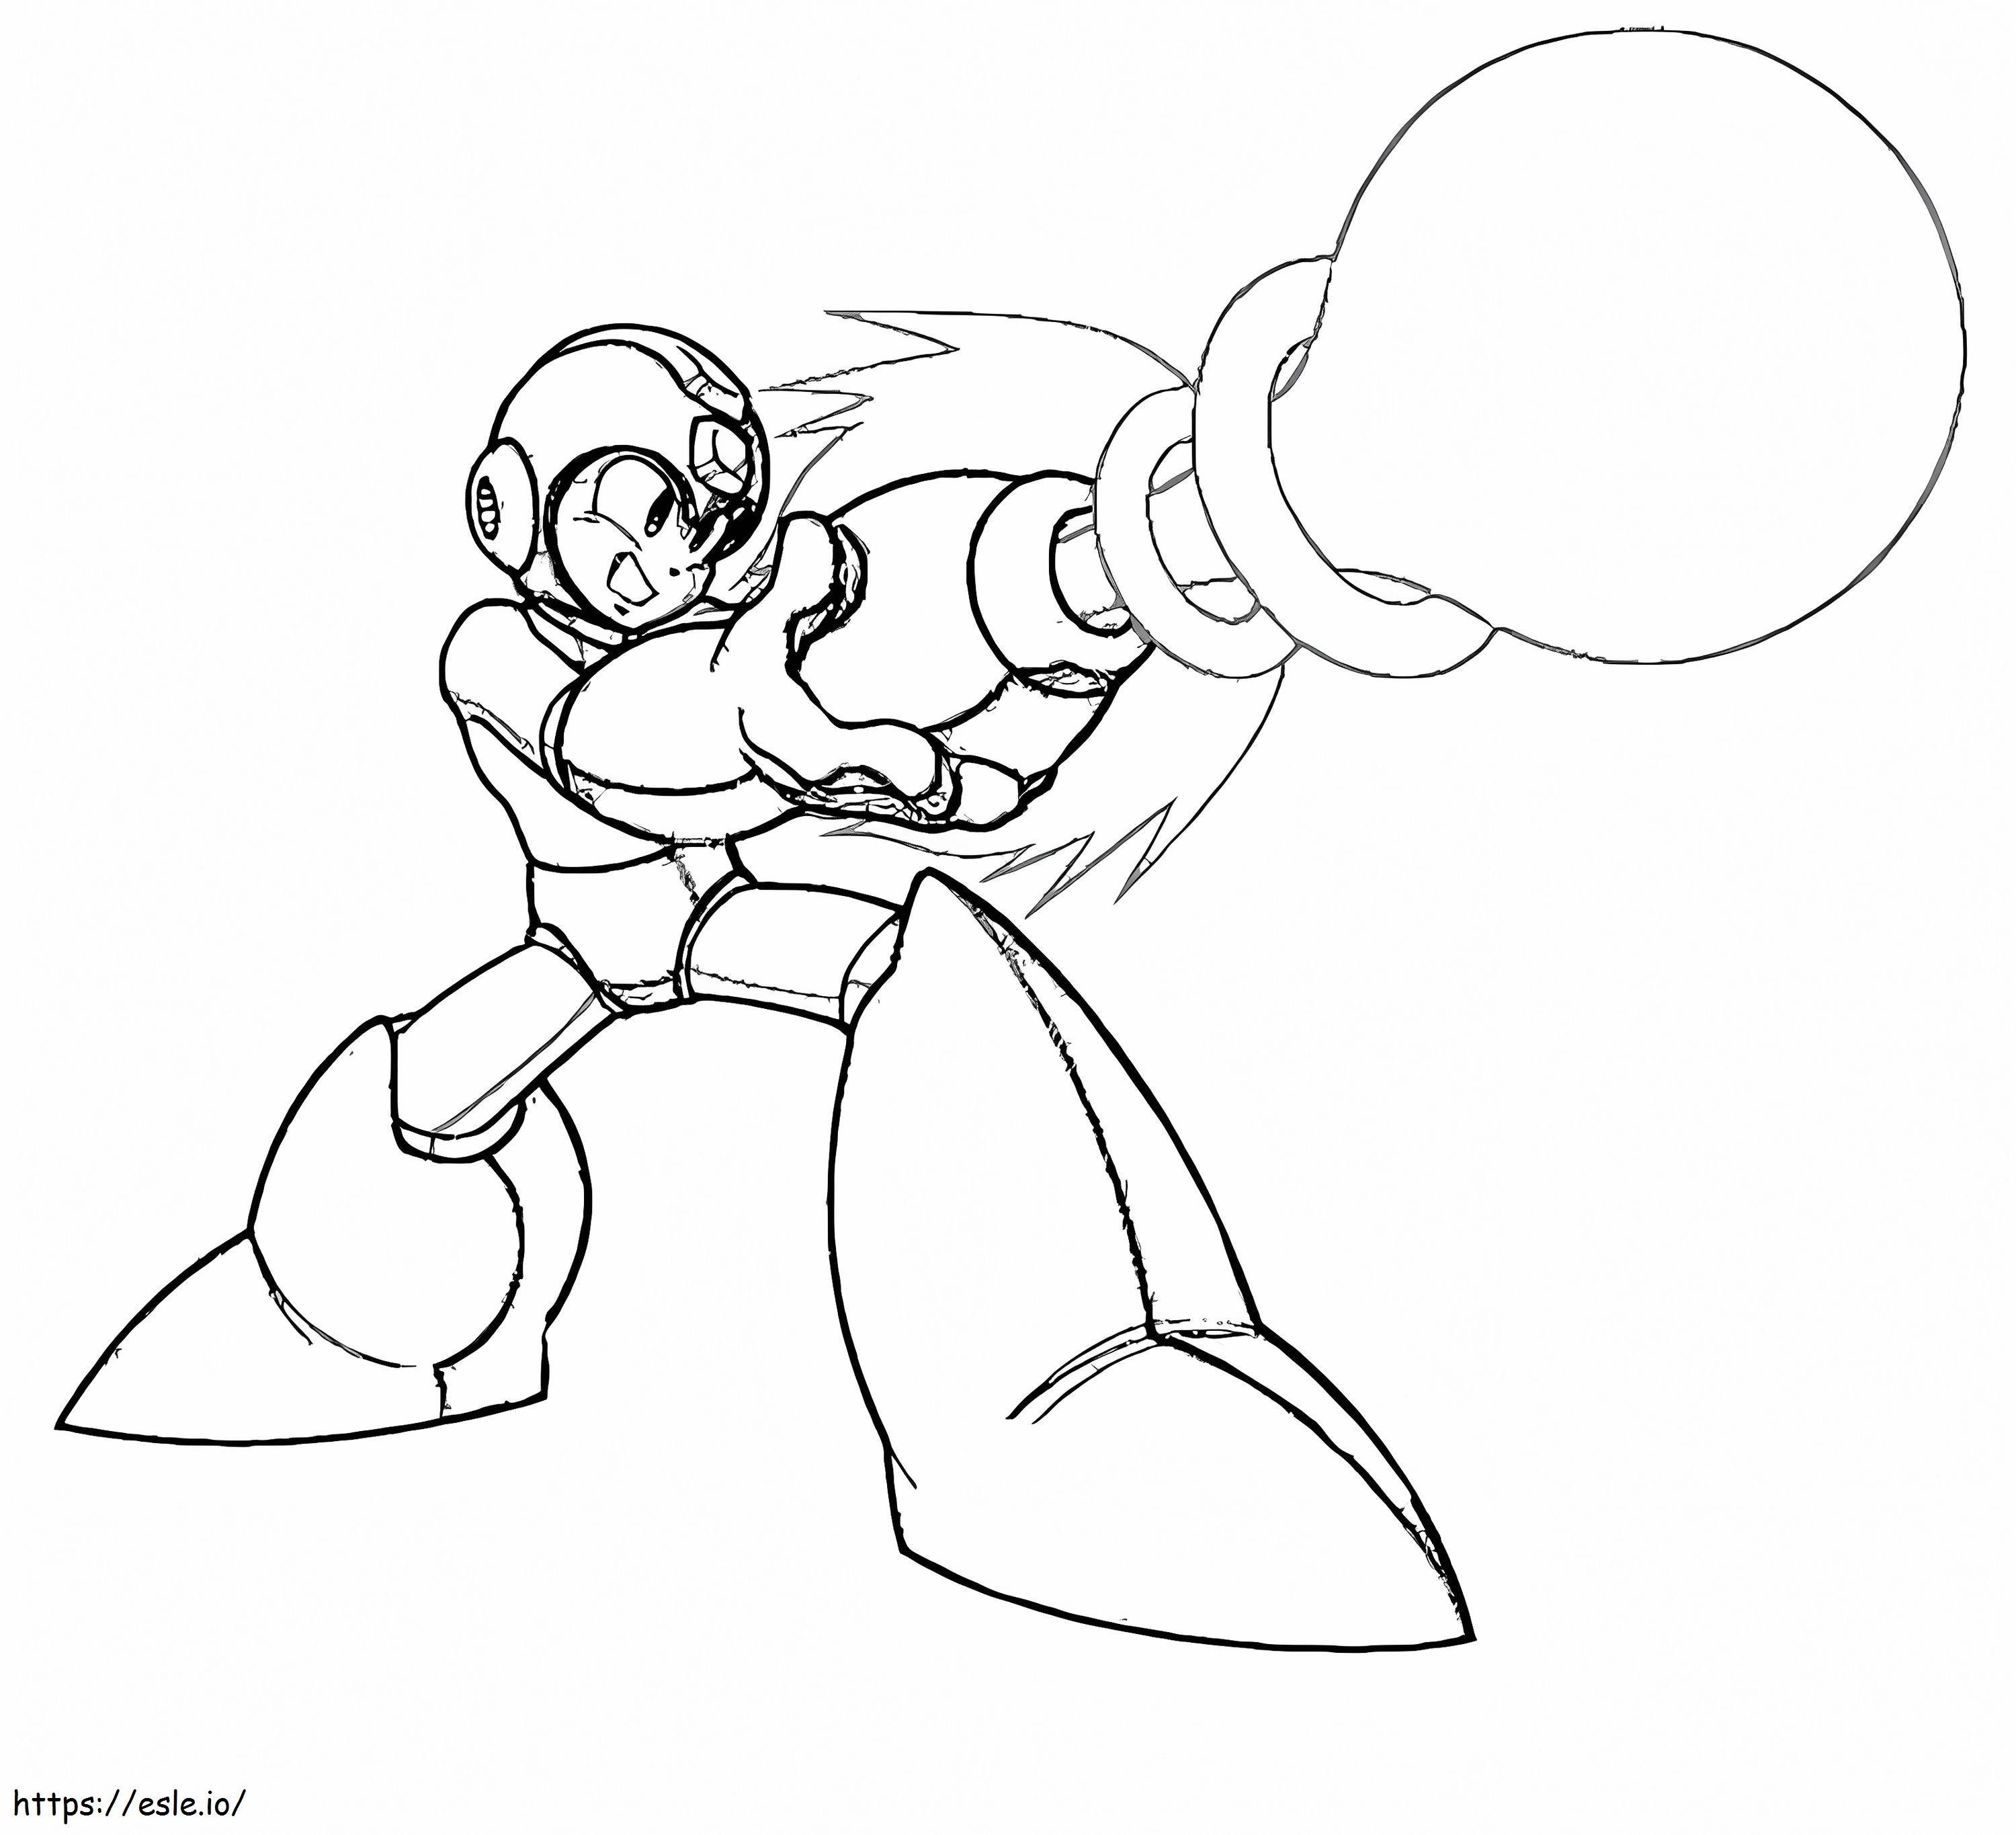 Mega Man coloring page